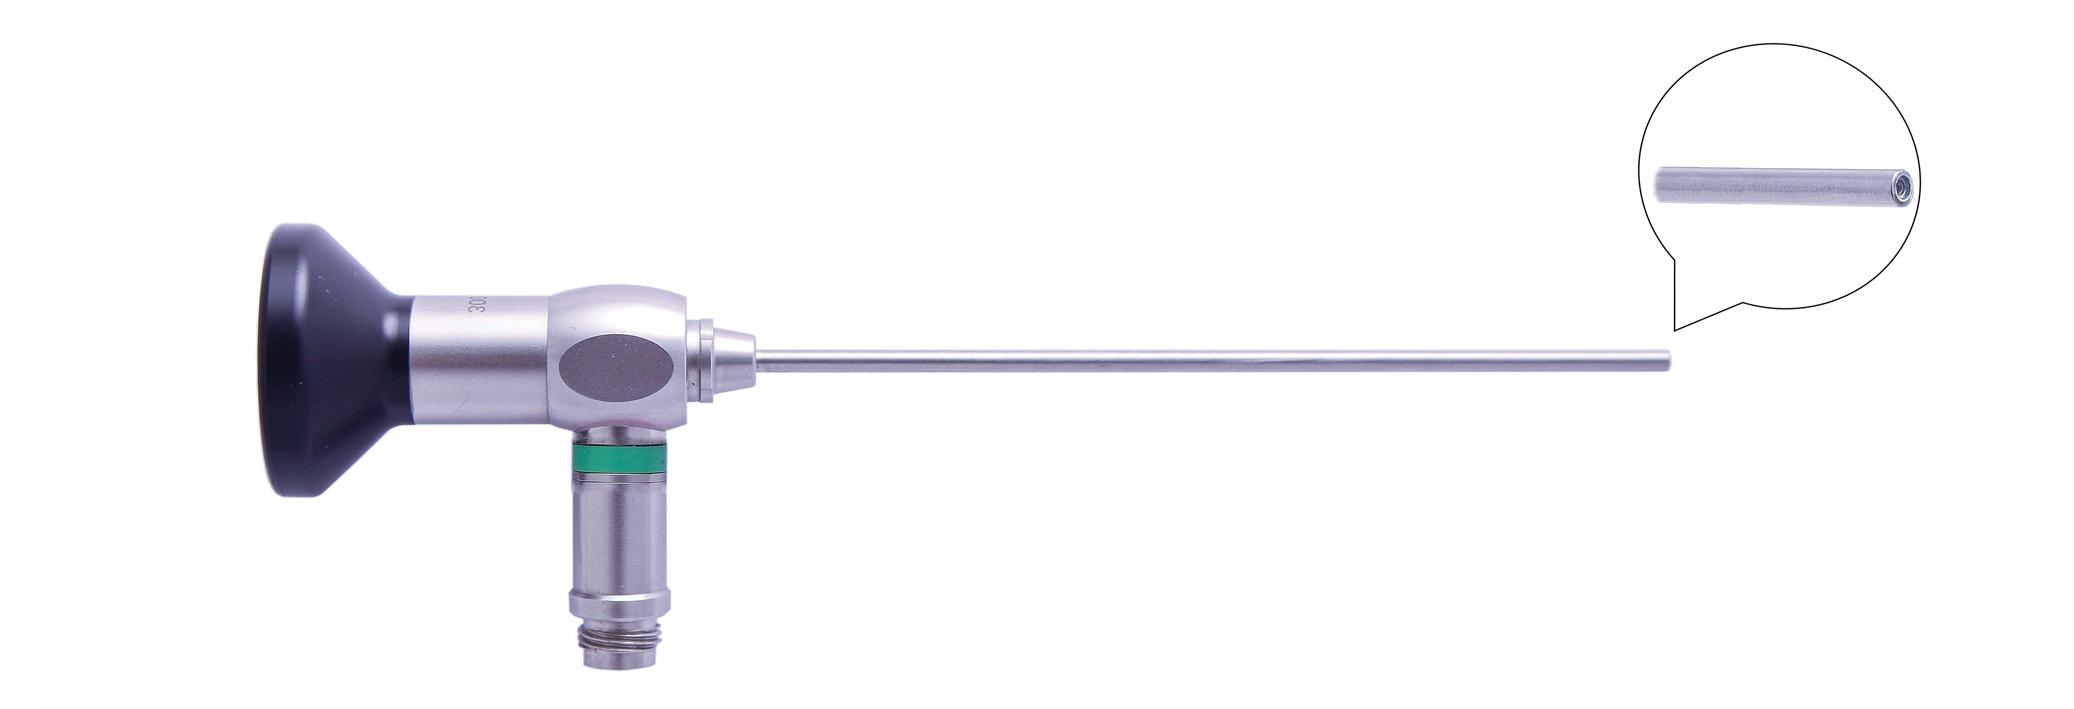 Трубка оптическая (артроскопическая, риноскопическая) ТОАР-012 диам. 4 мм, с углом наблюдения 0 гр. (дл. 110 мм)